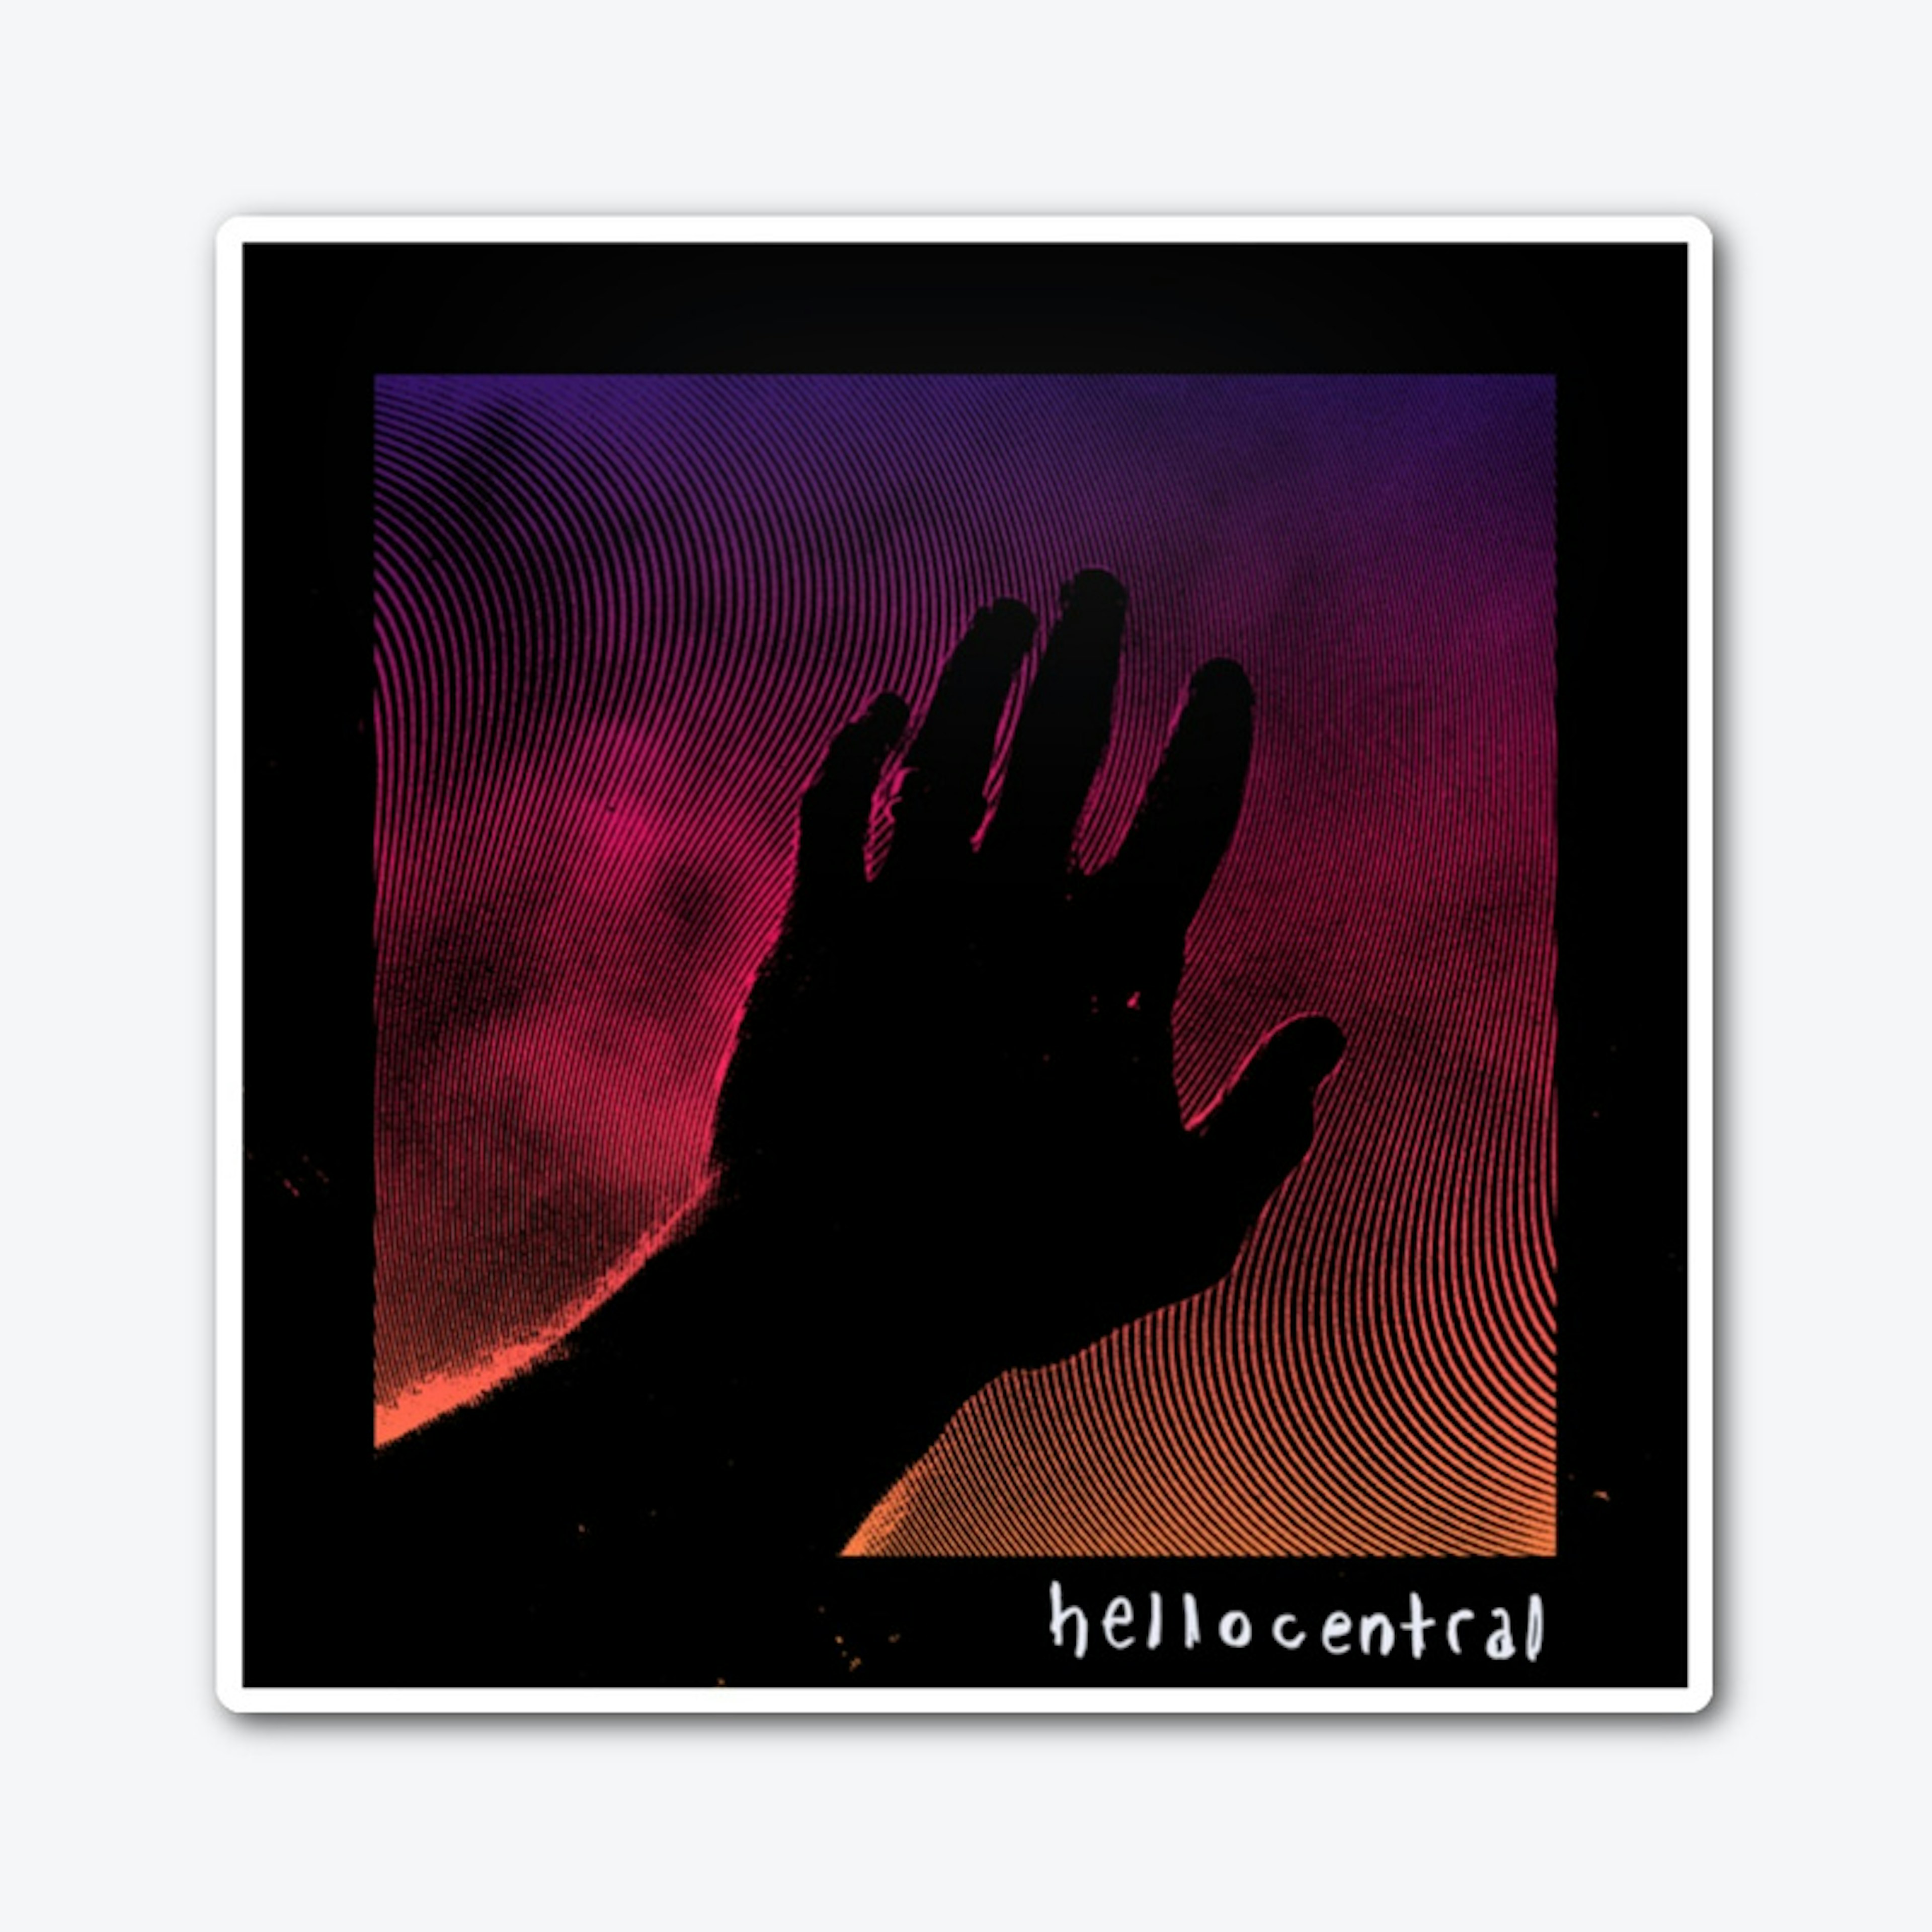 hellocentral album cover sticker